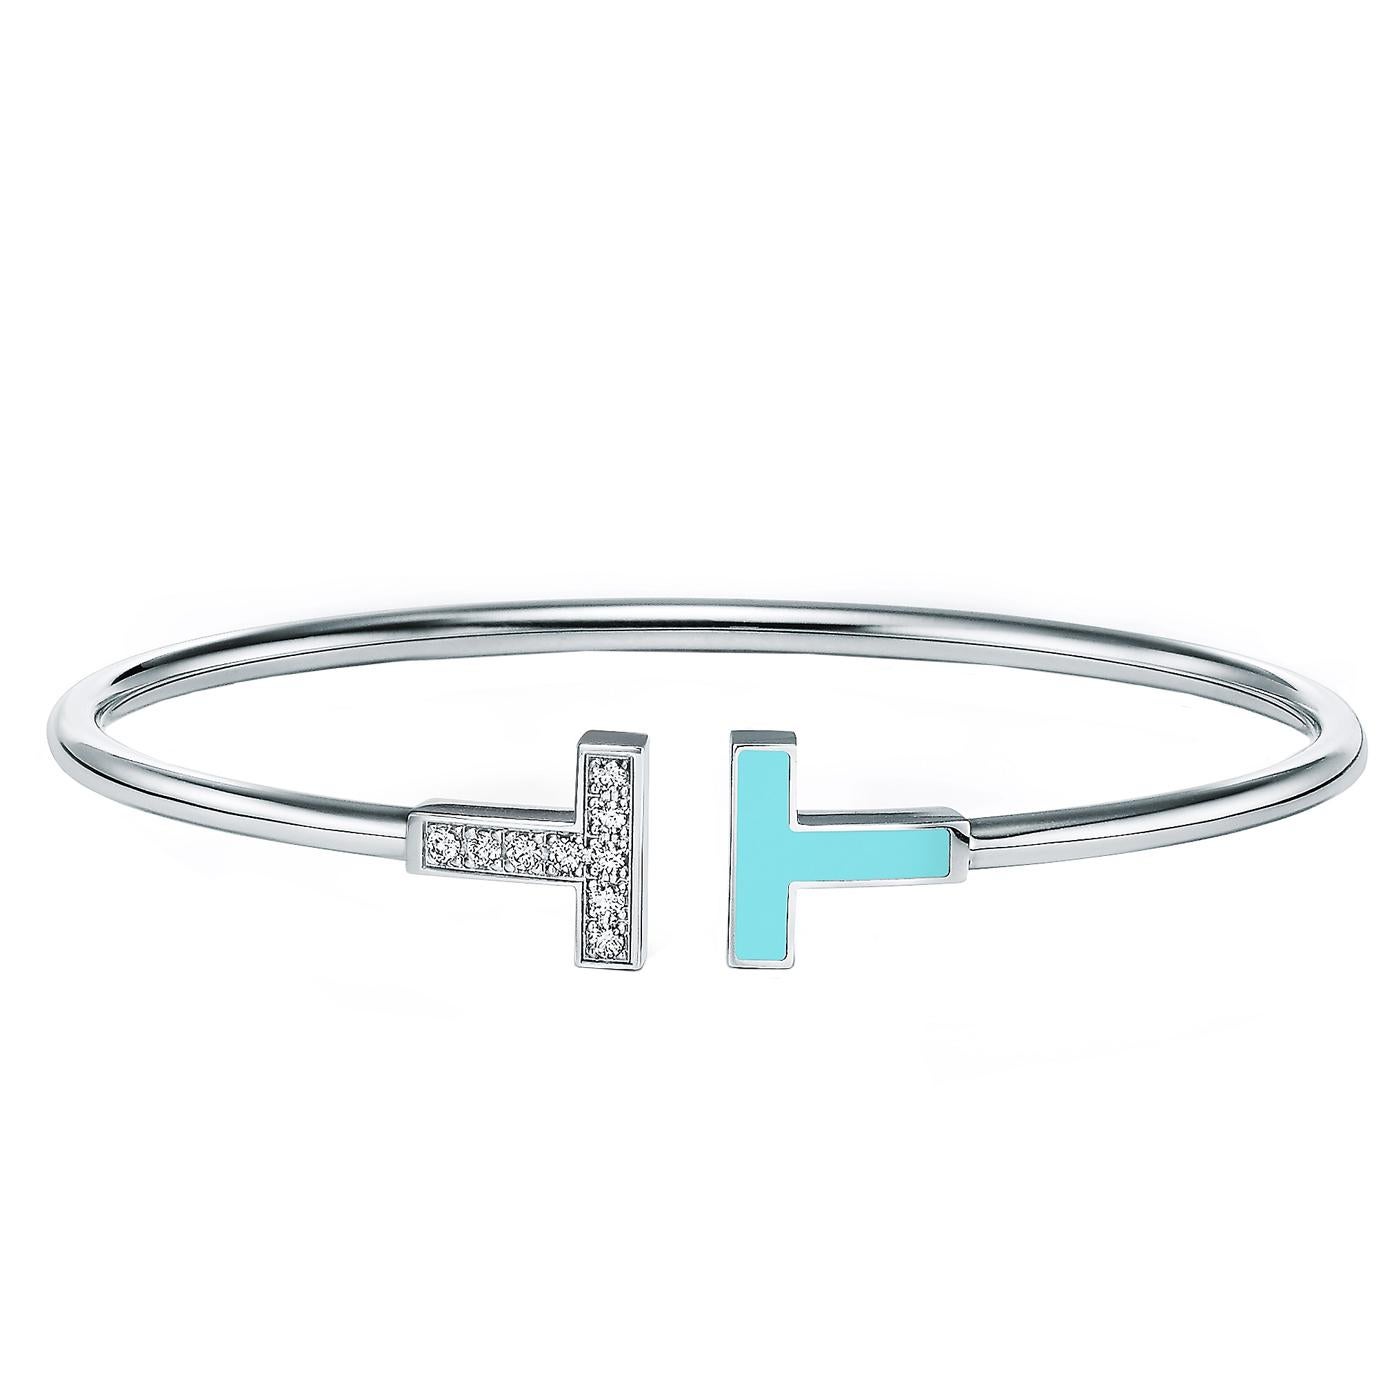 Ce bracelet moderne est rehaussé de diamants et de turquoise, une pierre préférée des designers de Tiffany depuis plus d'un siècle. La formation naturelle de la pierre crée de subtiles différences d'aspect, garantissant que chaque pièce est aussi